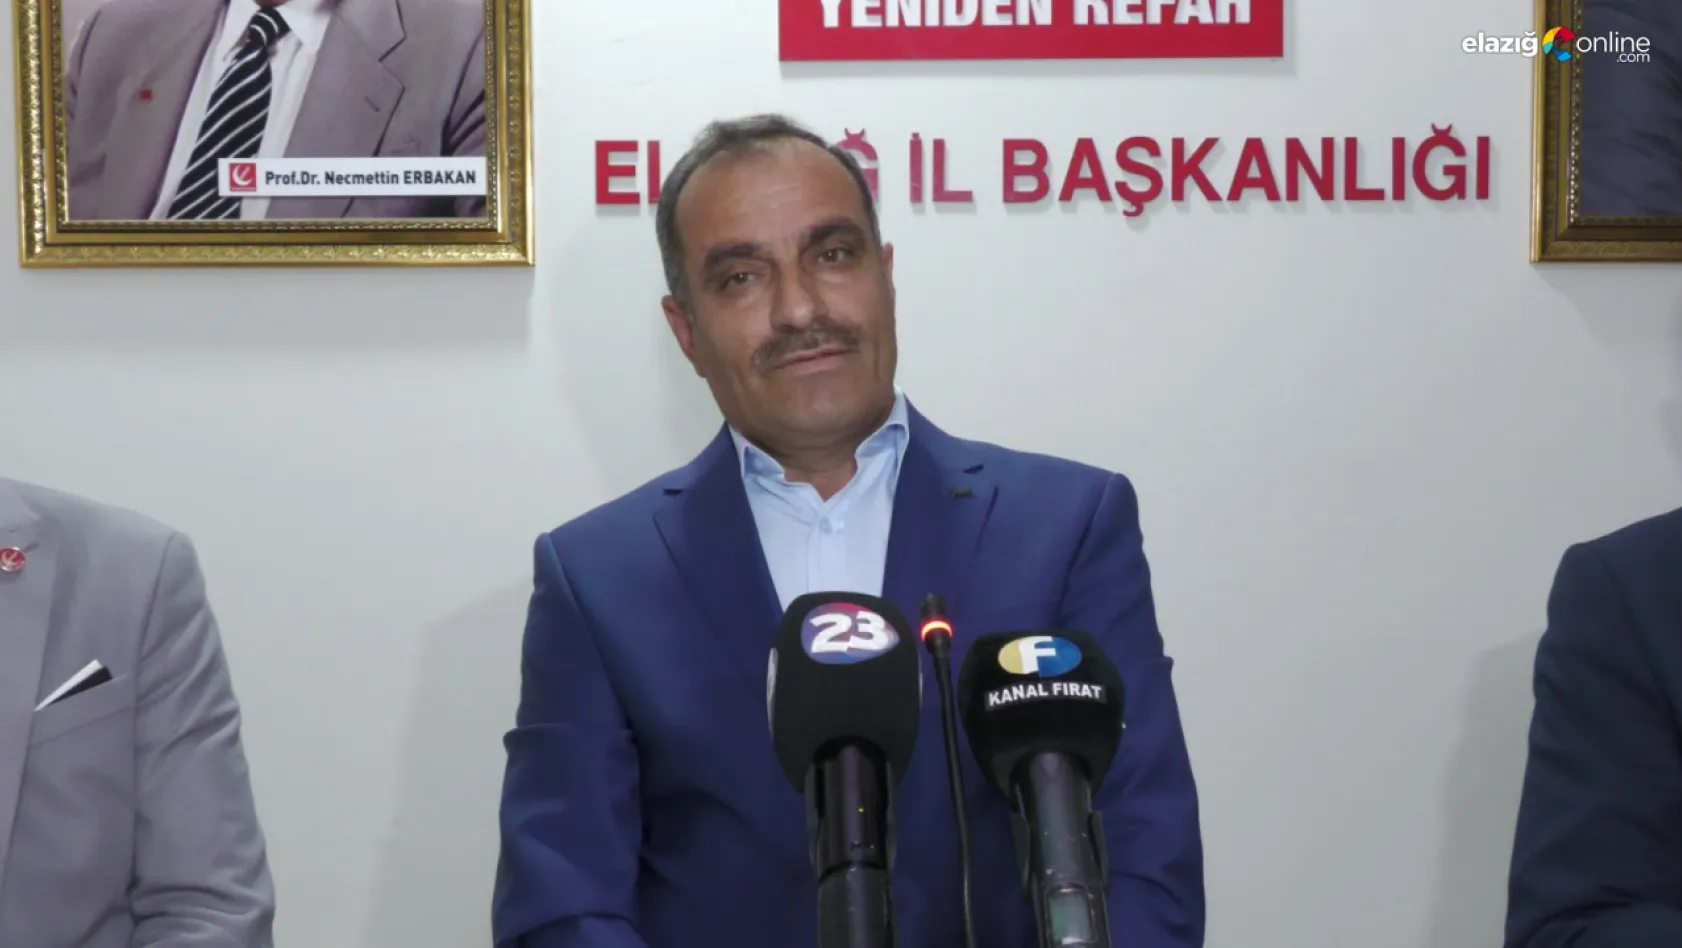 Mustafa Şahin Yeniden Refah Partisi'nden aday adaylığını açıkladı